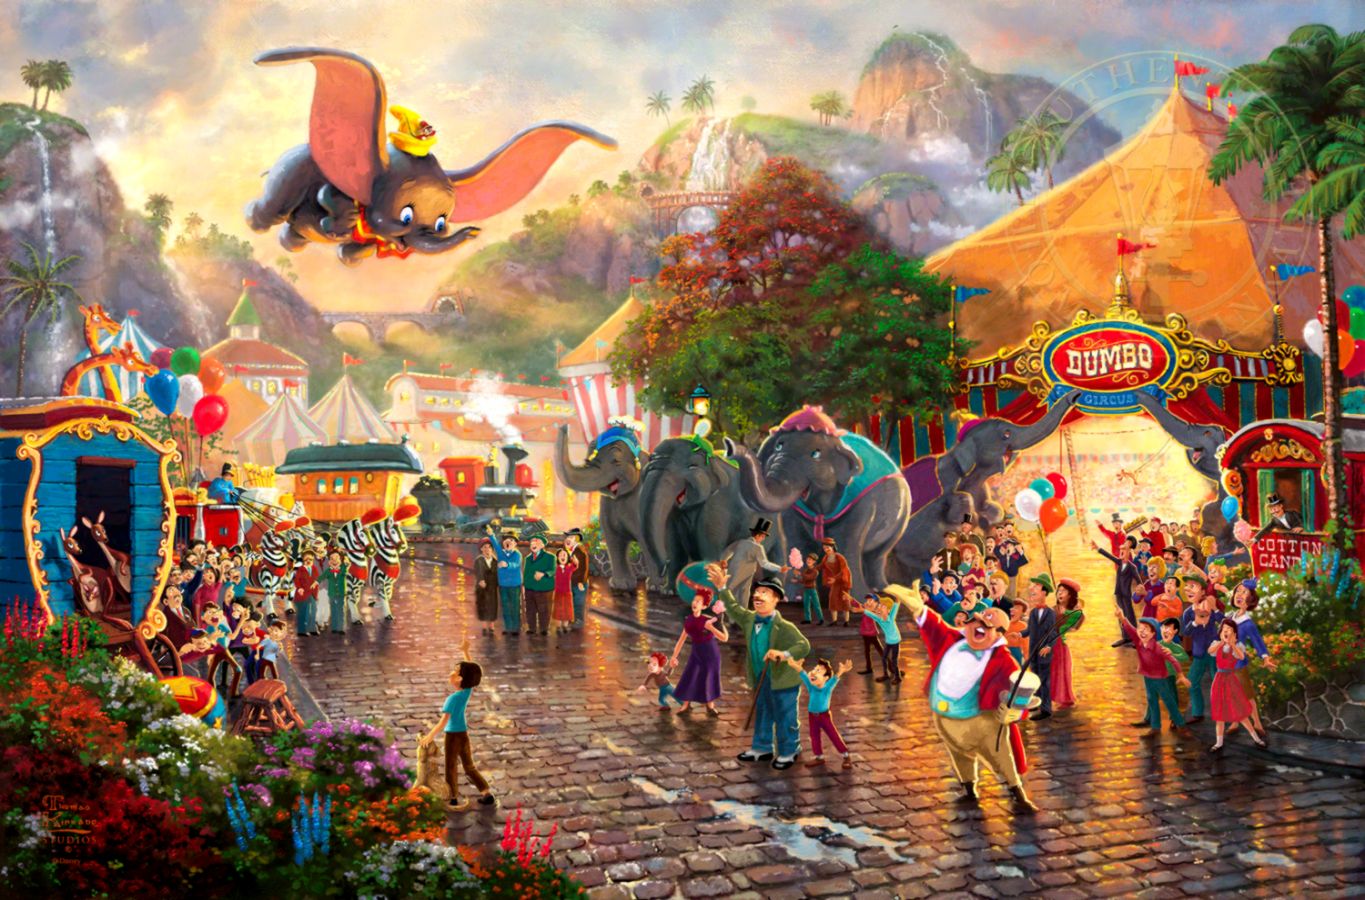 Disney Dumbo The Thomas Kinkade Company - Thomas Kinkade Disney Dumbo - HD Wallpaper 